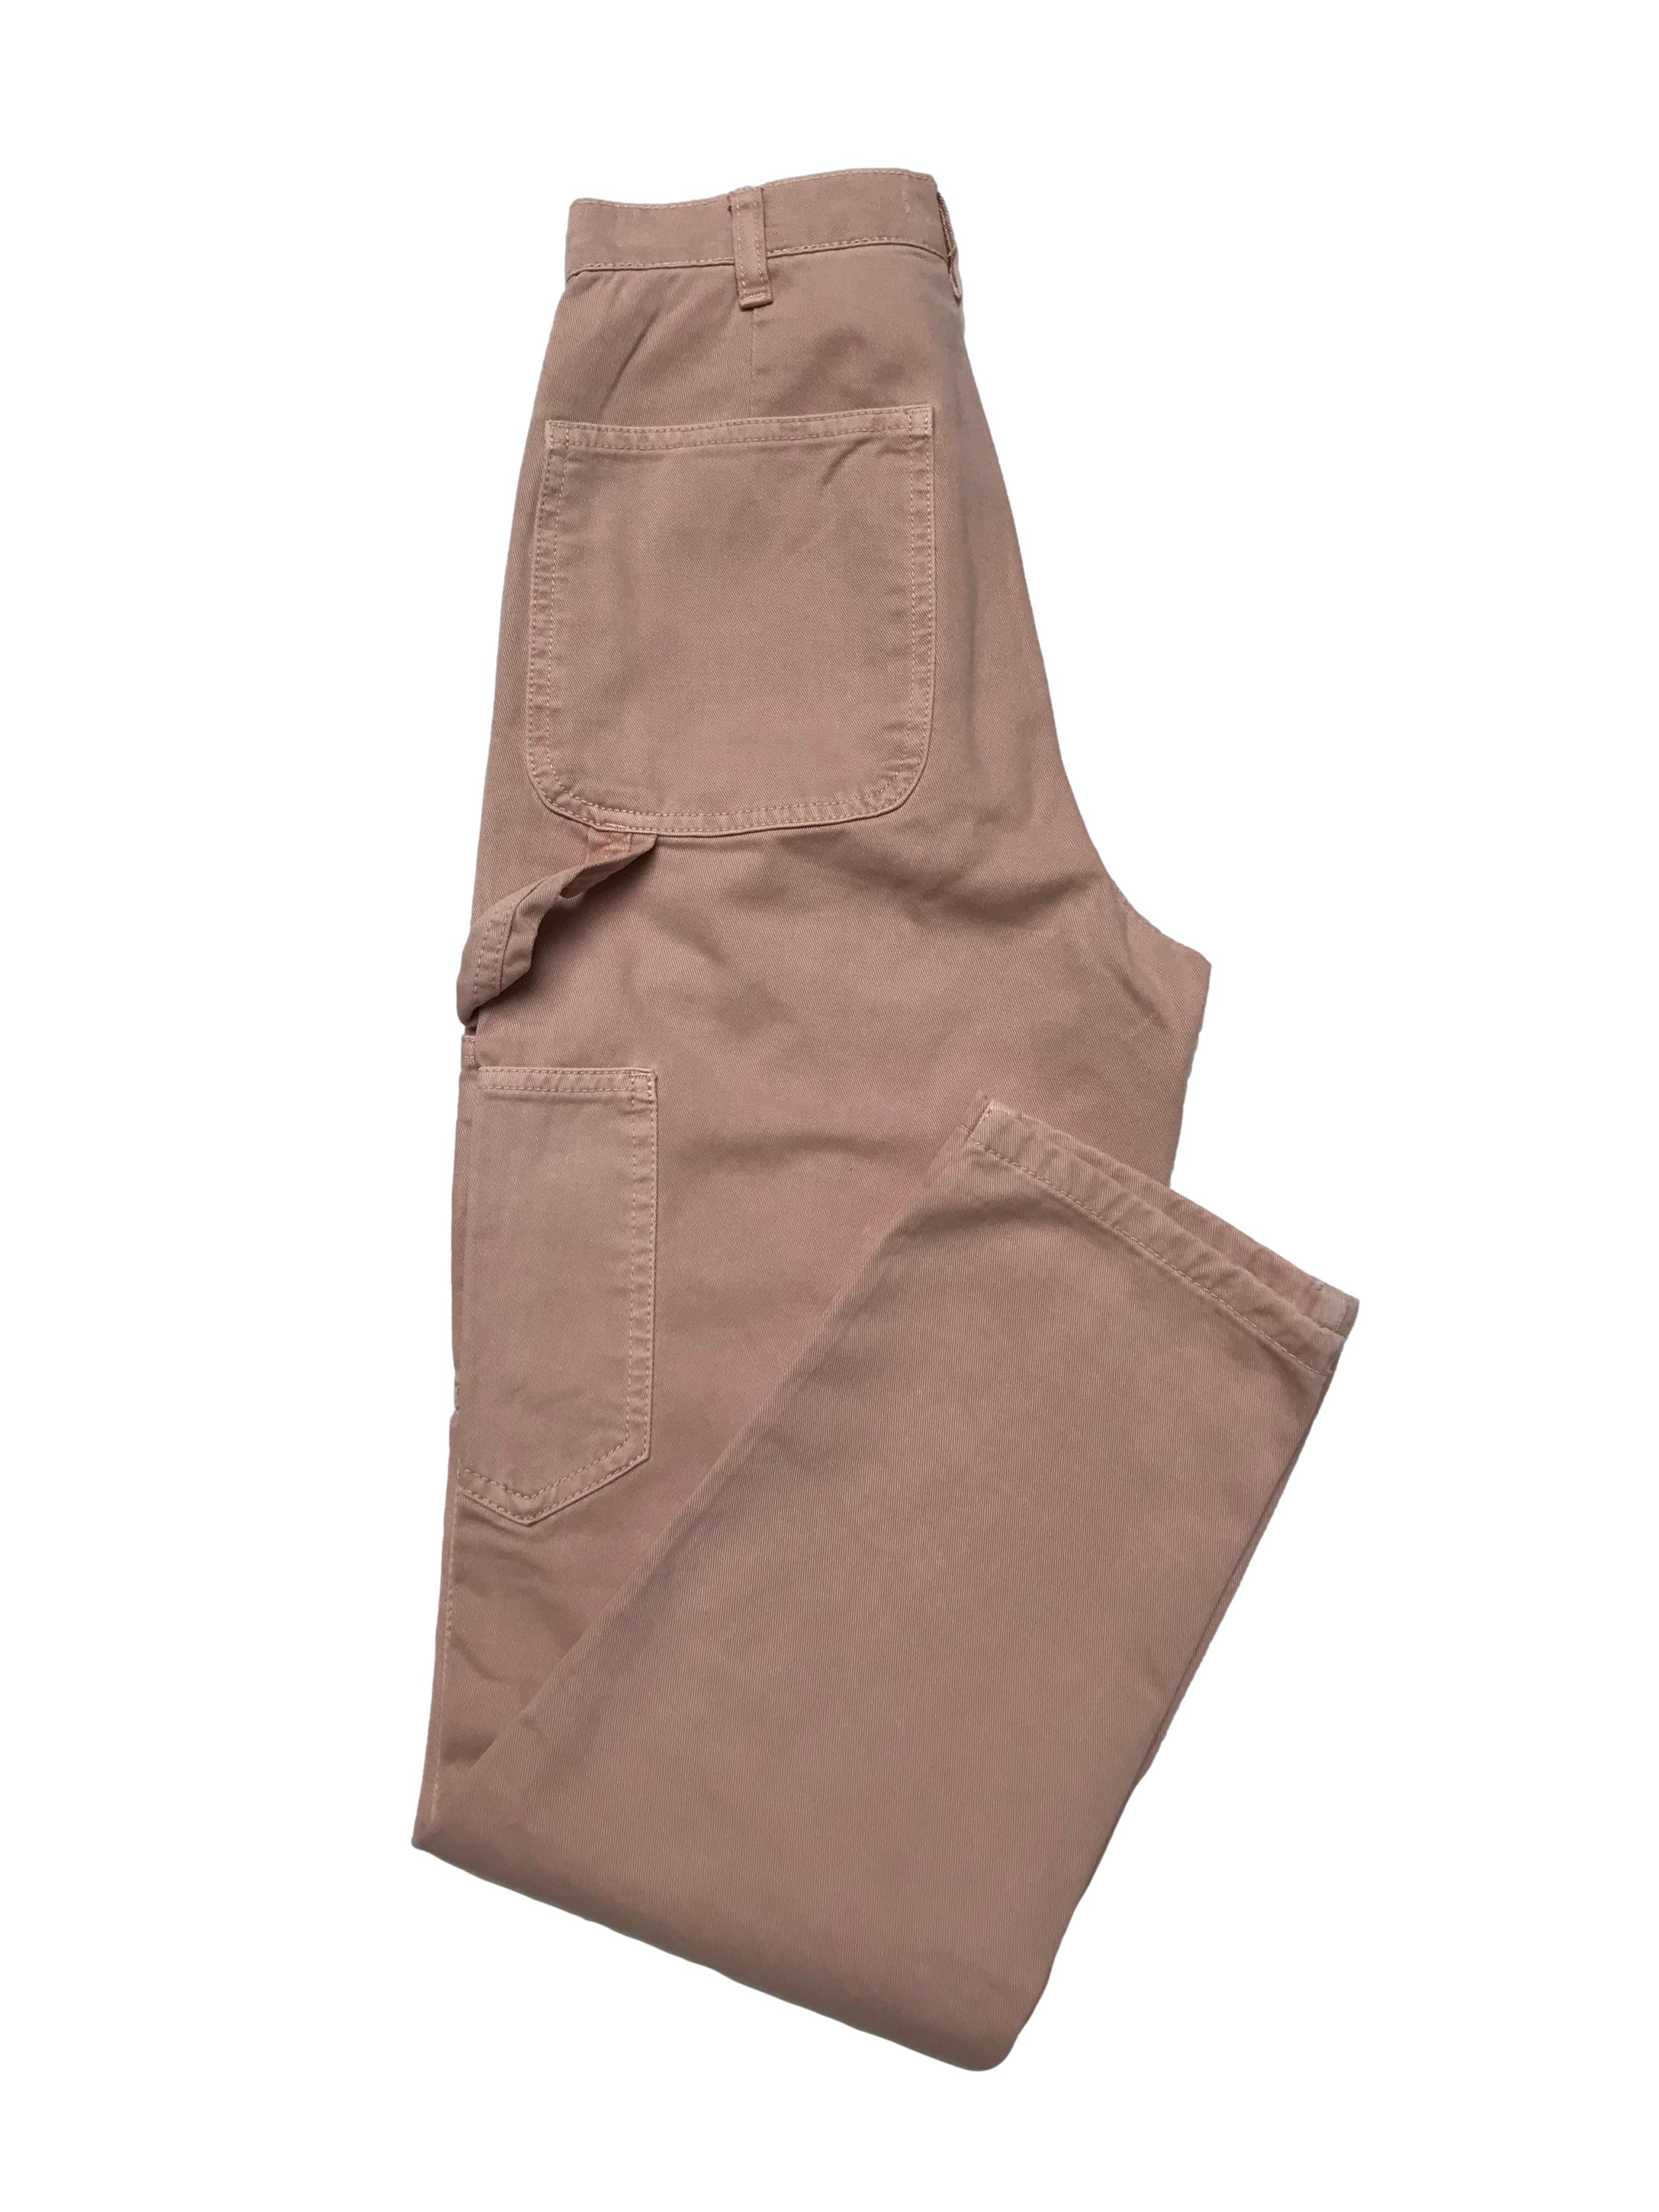 Jean Zara palo rosa efecto lavado, modelo carpenter a la cintura y corte mom, 100% algodòn. Cintura 60cm Largo 95cm